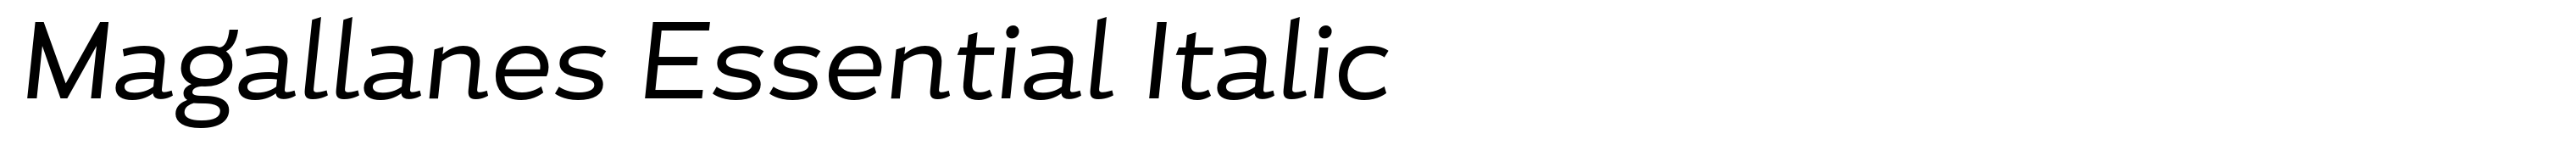 Magallanes Essential Italic